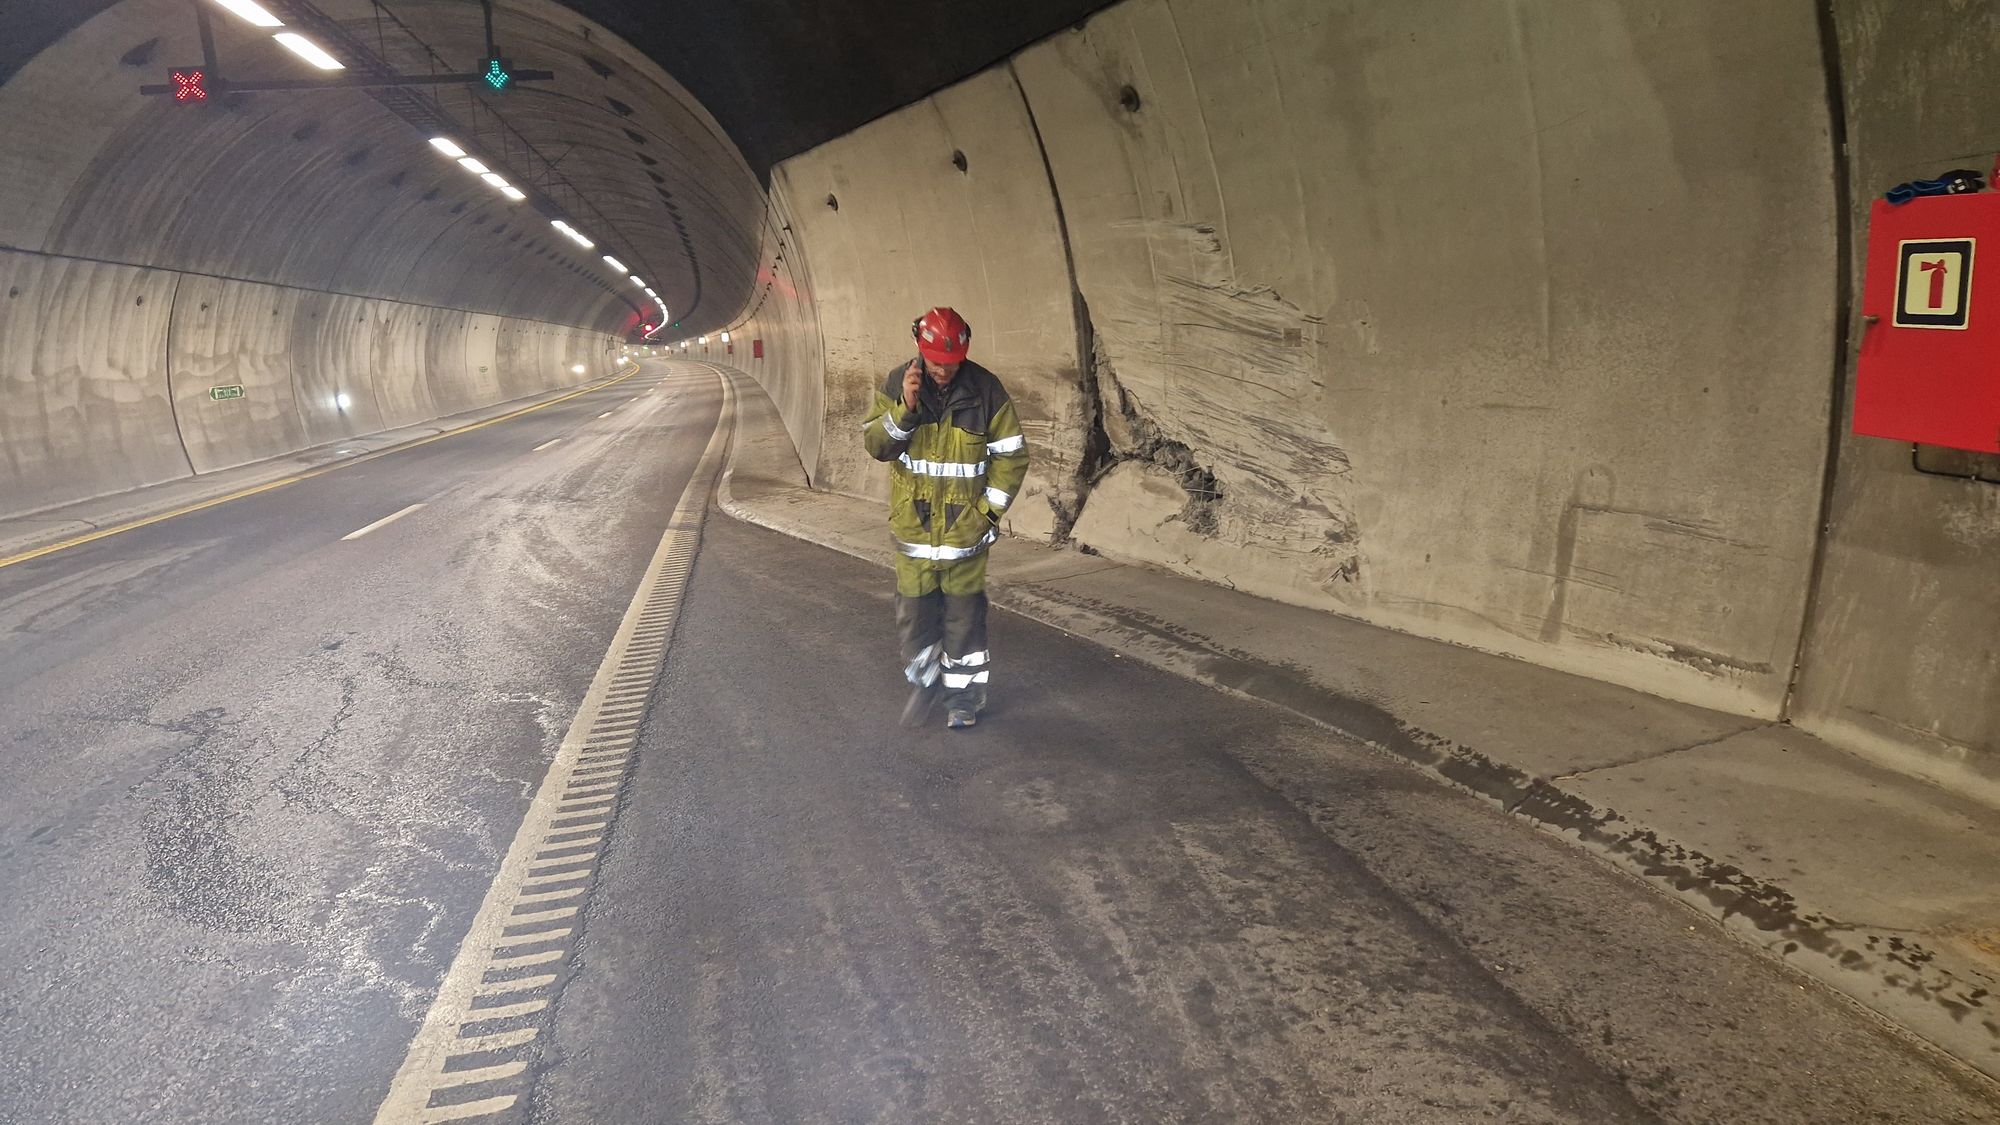 Flere veggelementer må byttes i Nøsttvedttunnelen: Ny helg med store køer